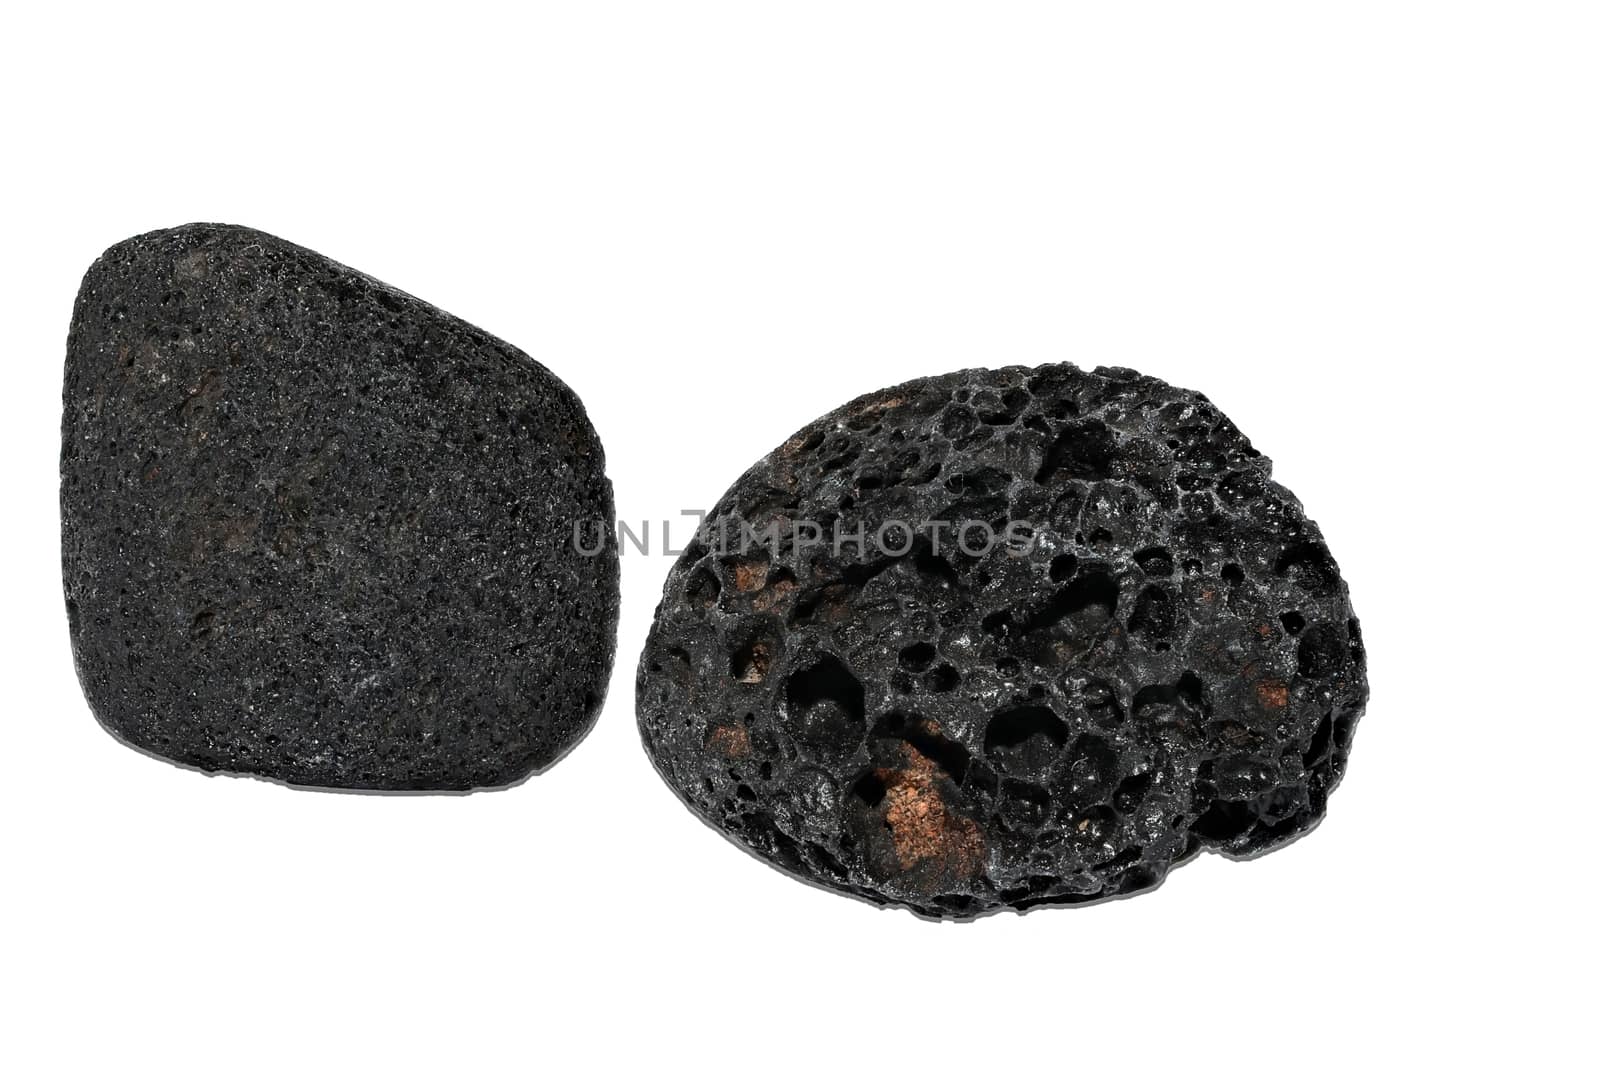 Set of a beautiful Lava stone tumbled specimen isolated on white background